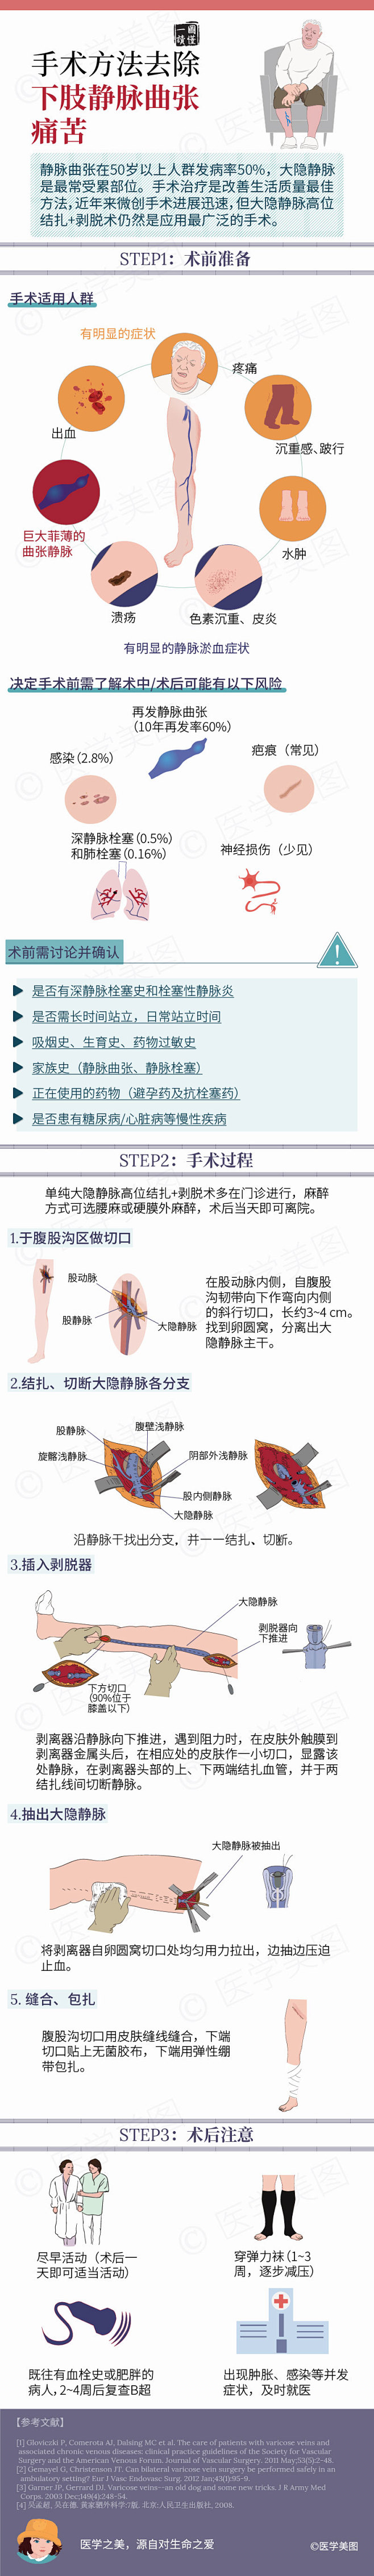 简单三步丨手术方法去除下肢静脉曲张痛苦